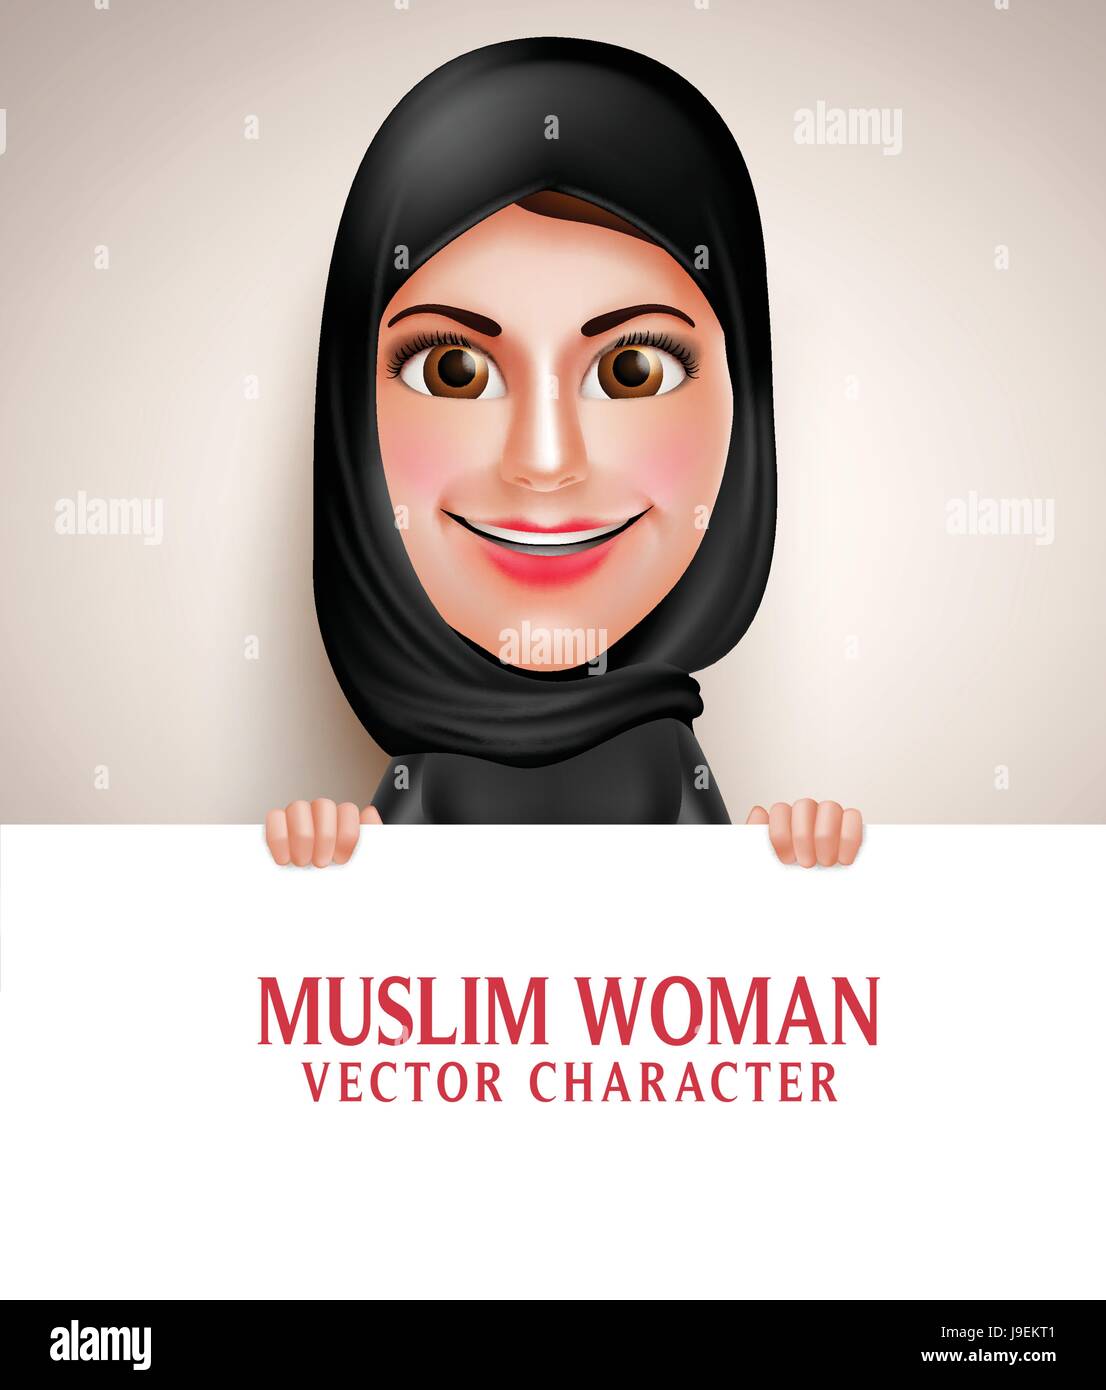 Muslimischen arabischen Frau Vektor Charakter hält leere weißen Tafel mit schönen Lächeln tragen Hijab und islamische Kleidung.  Vektor-Illustration. Stock Vektor